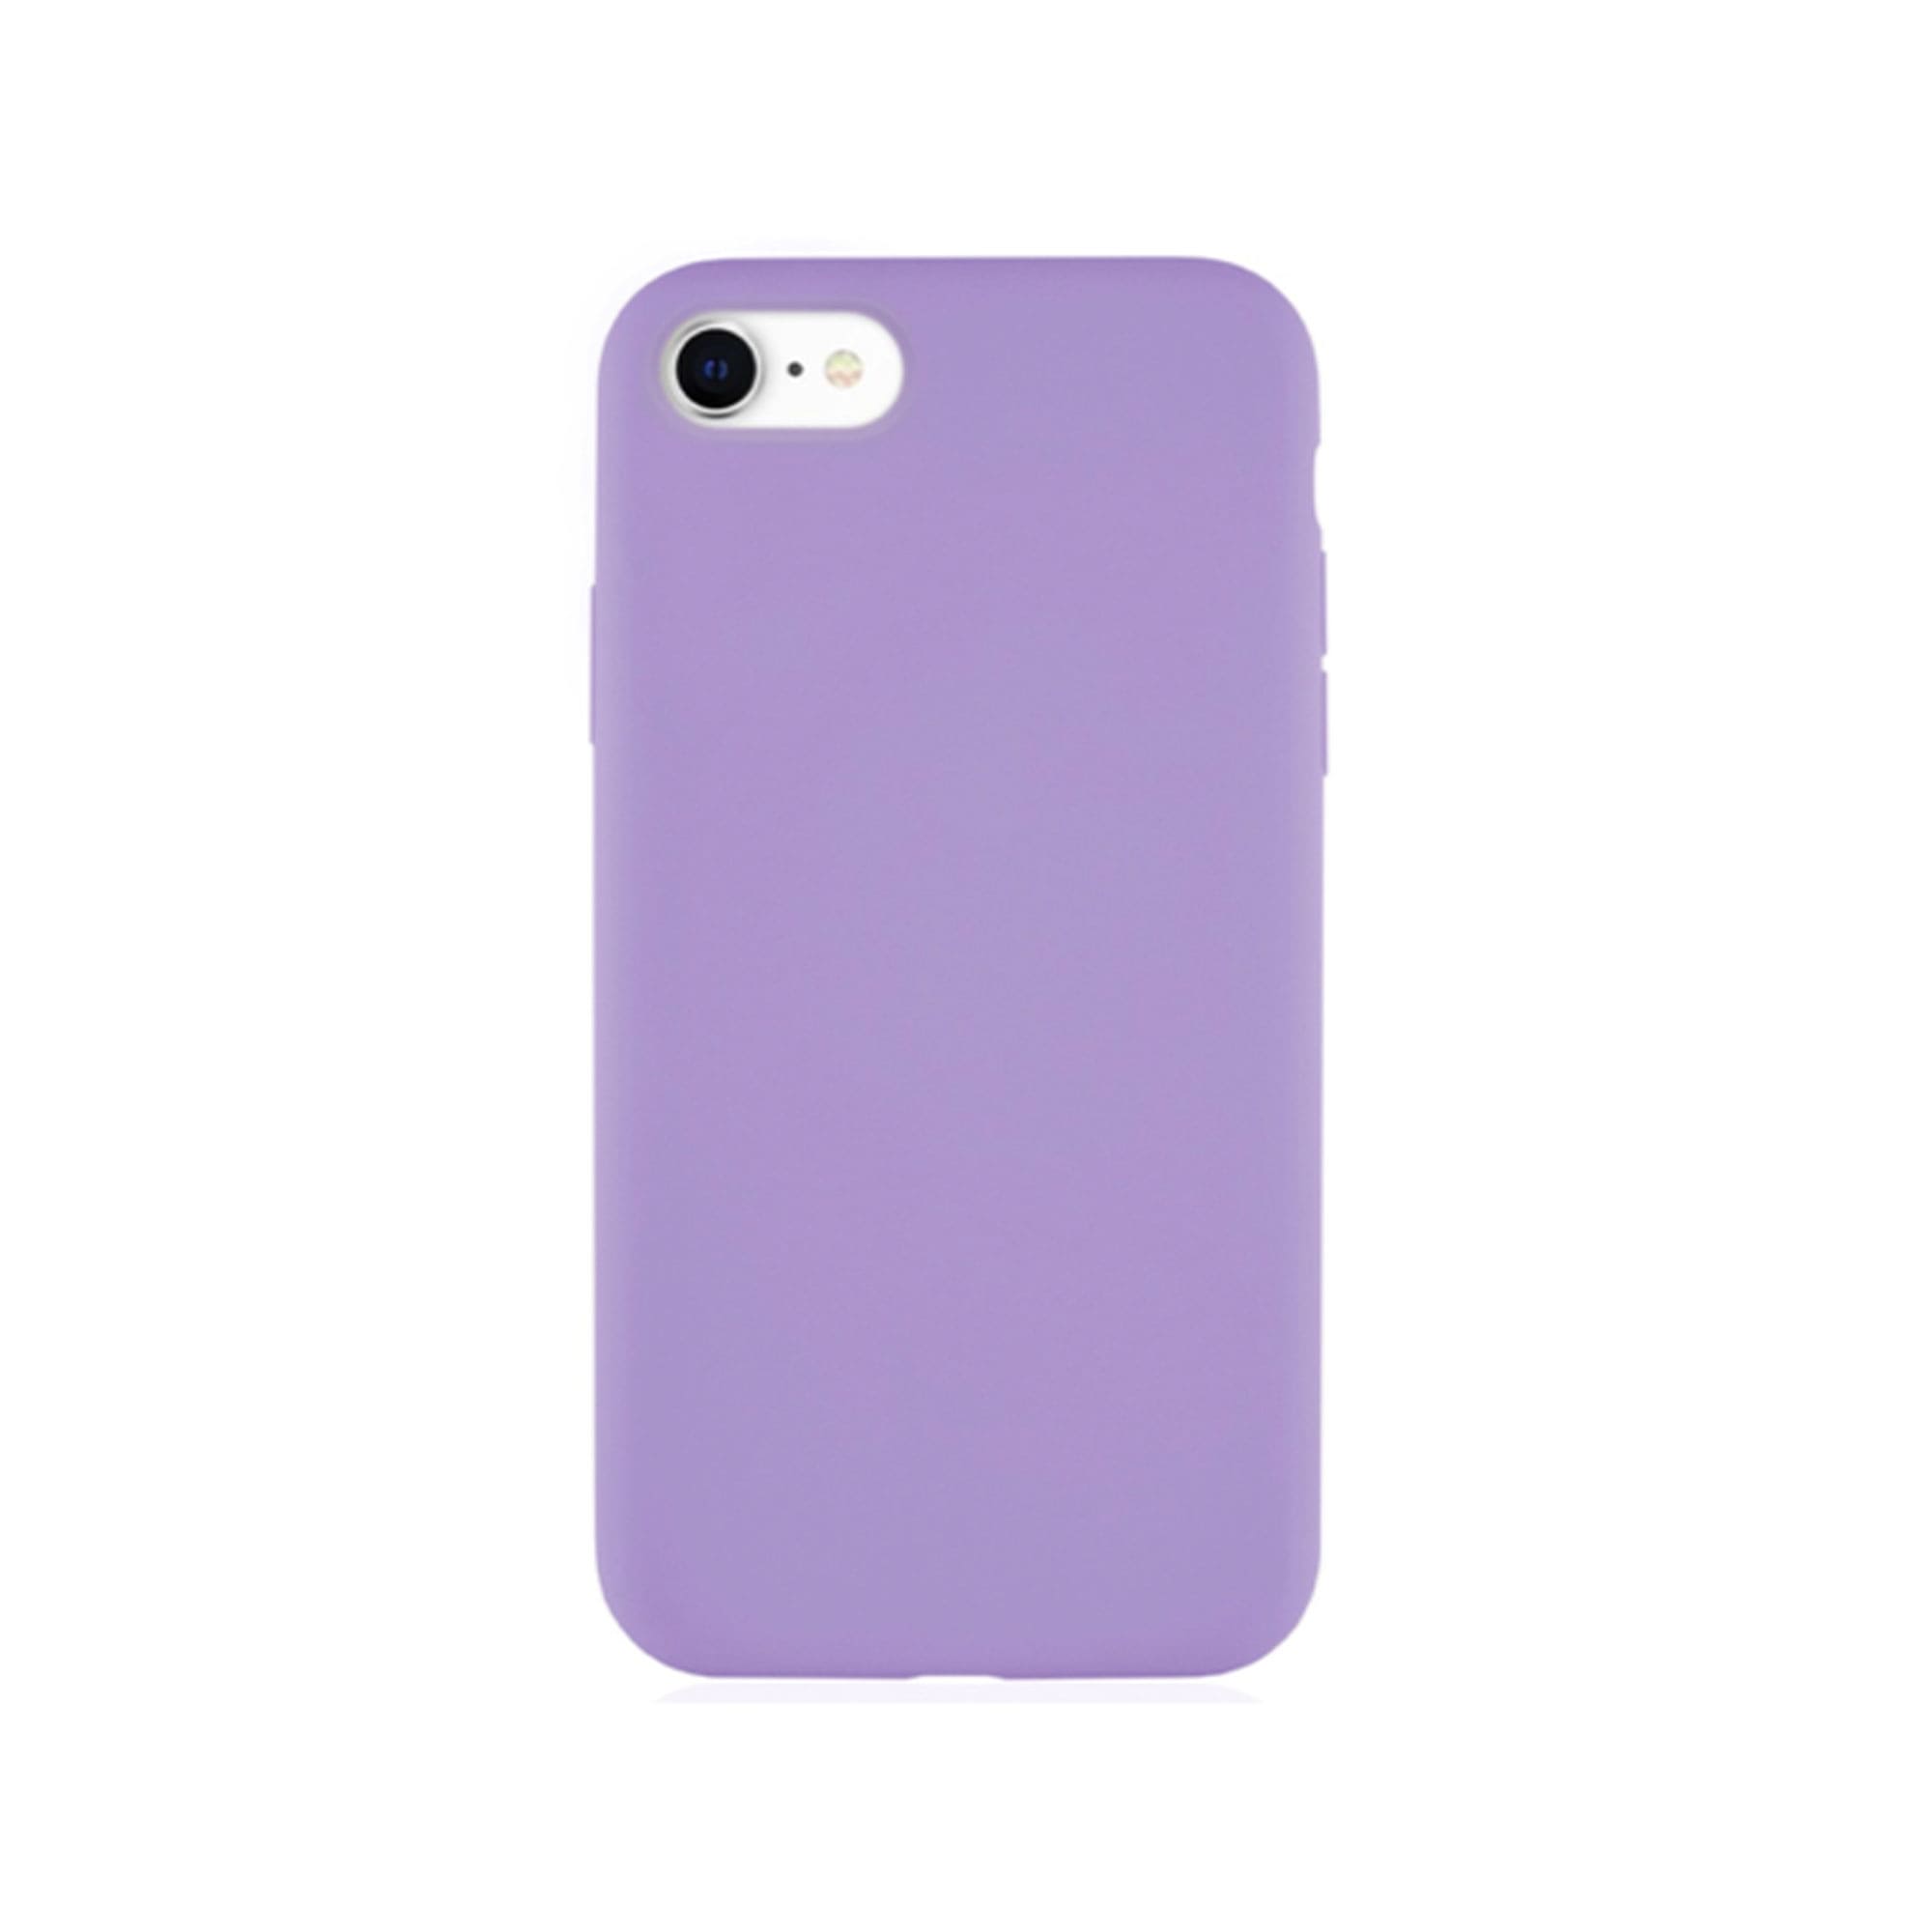 Фото — Чехол защитный vlp Silicone Сase для iPhone SE 2020, фиолетовый